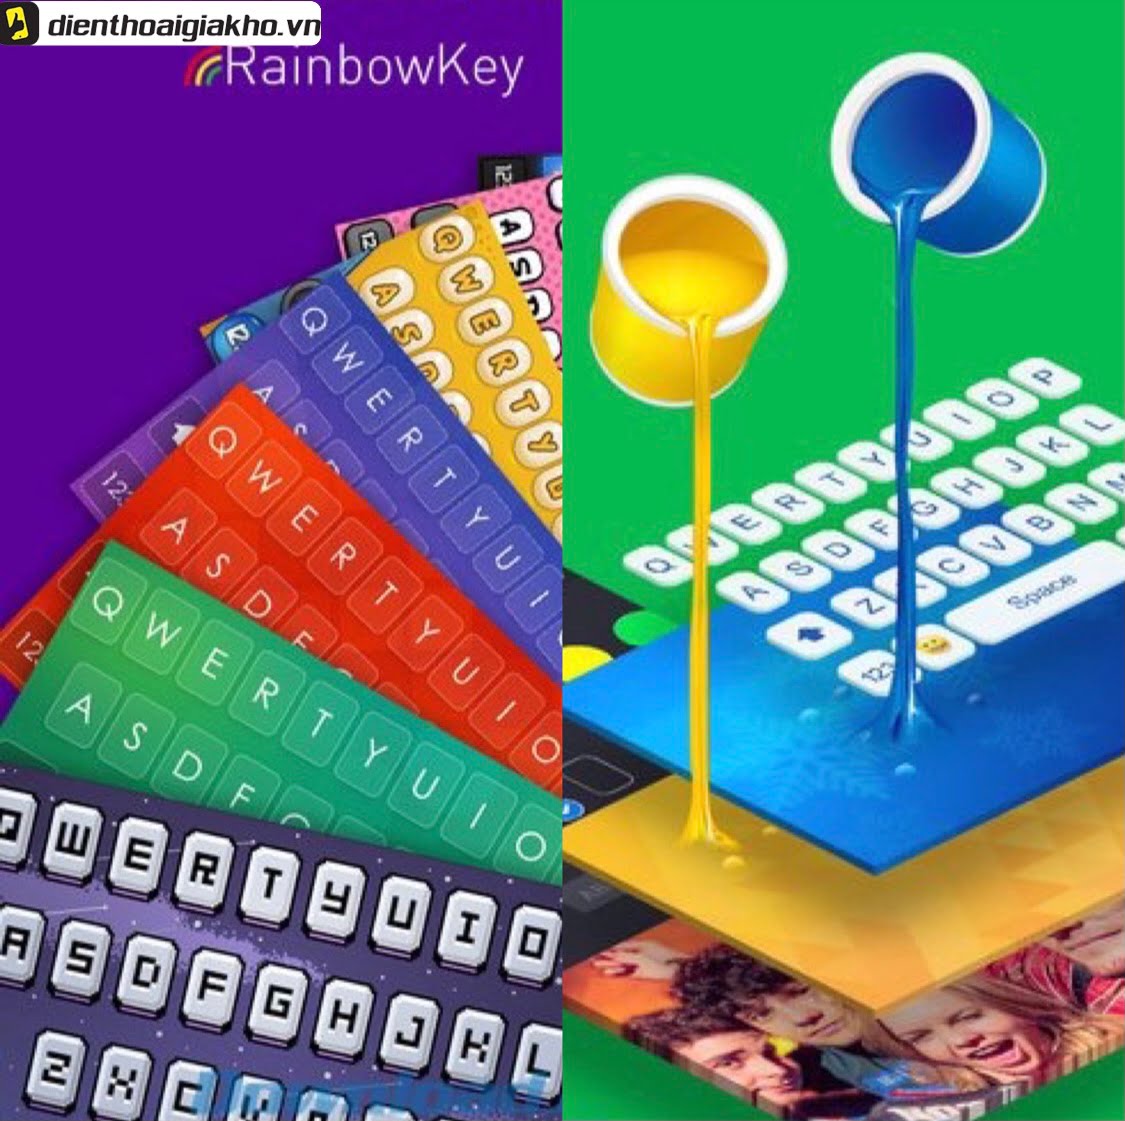 RainbowKey Keyboard: Một trong những ứng dụng bàn phím đẹp thích thú nhất với giới trẻ.